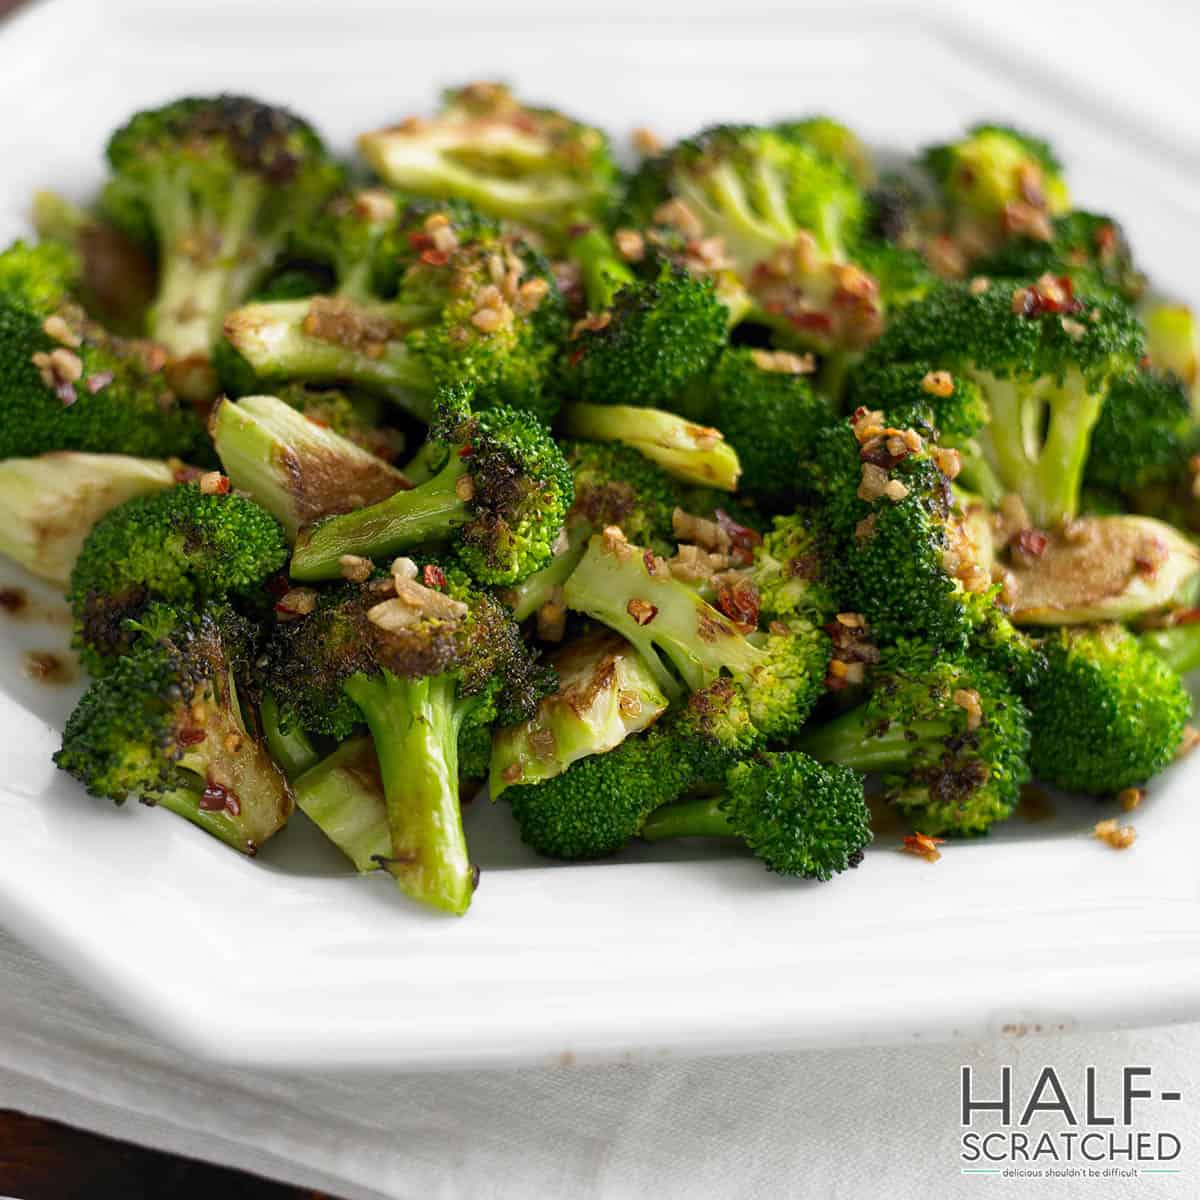 Tasty broccoli